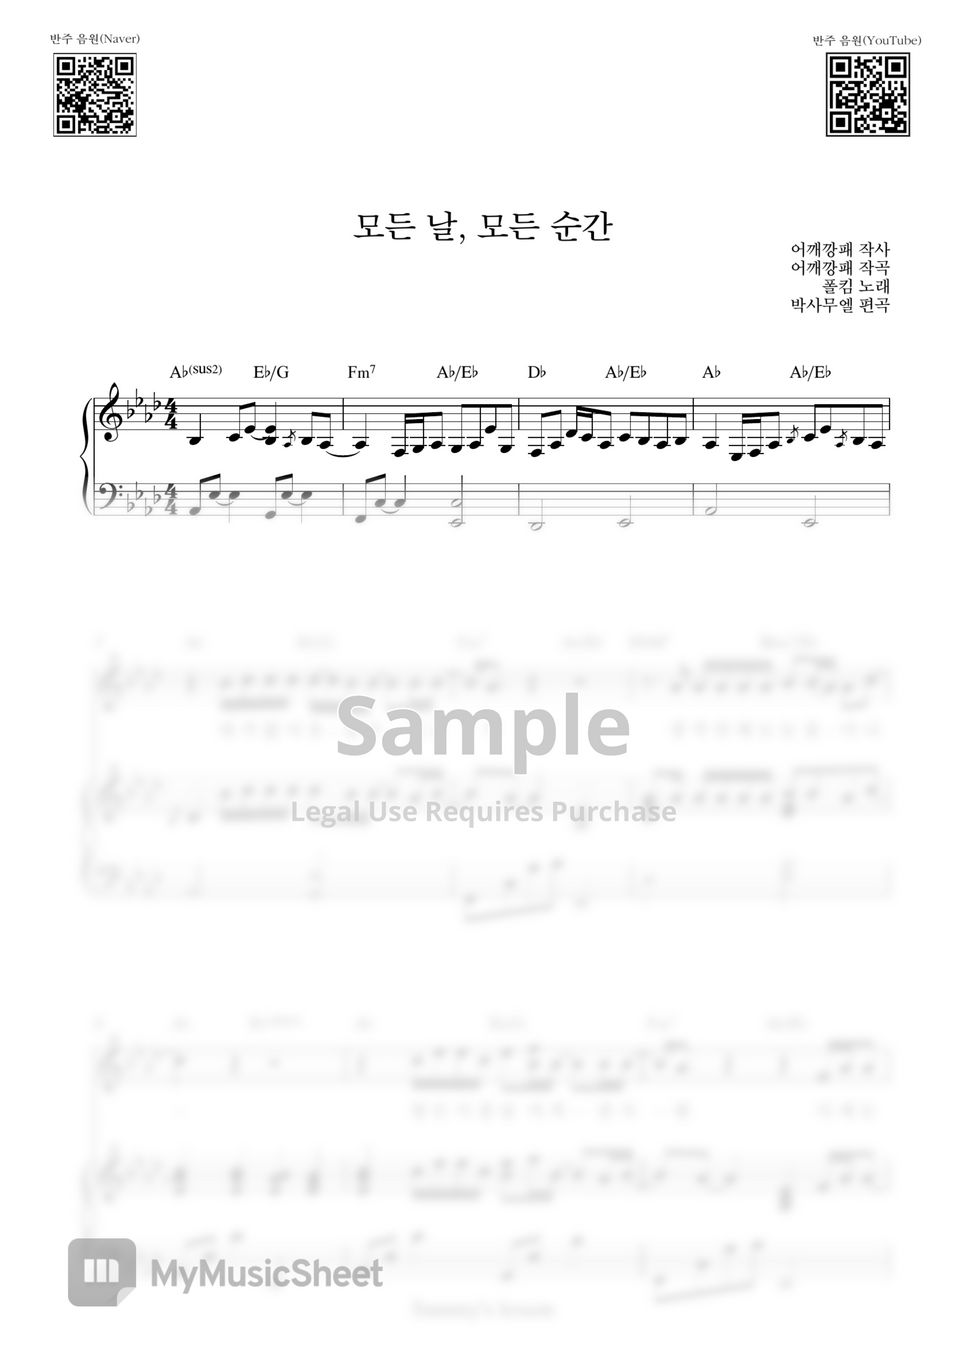 폴킴(Paul Kim) - 모든 날 모든 순(Every day, Every moment)) (Piano Cover) by Samuel Park